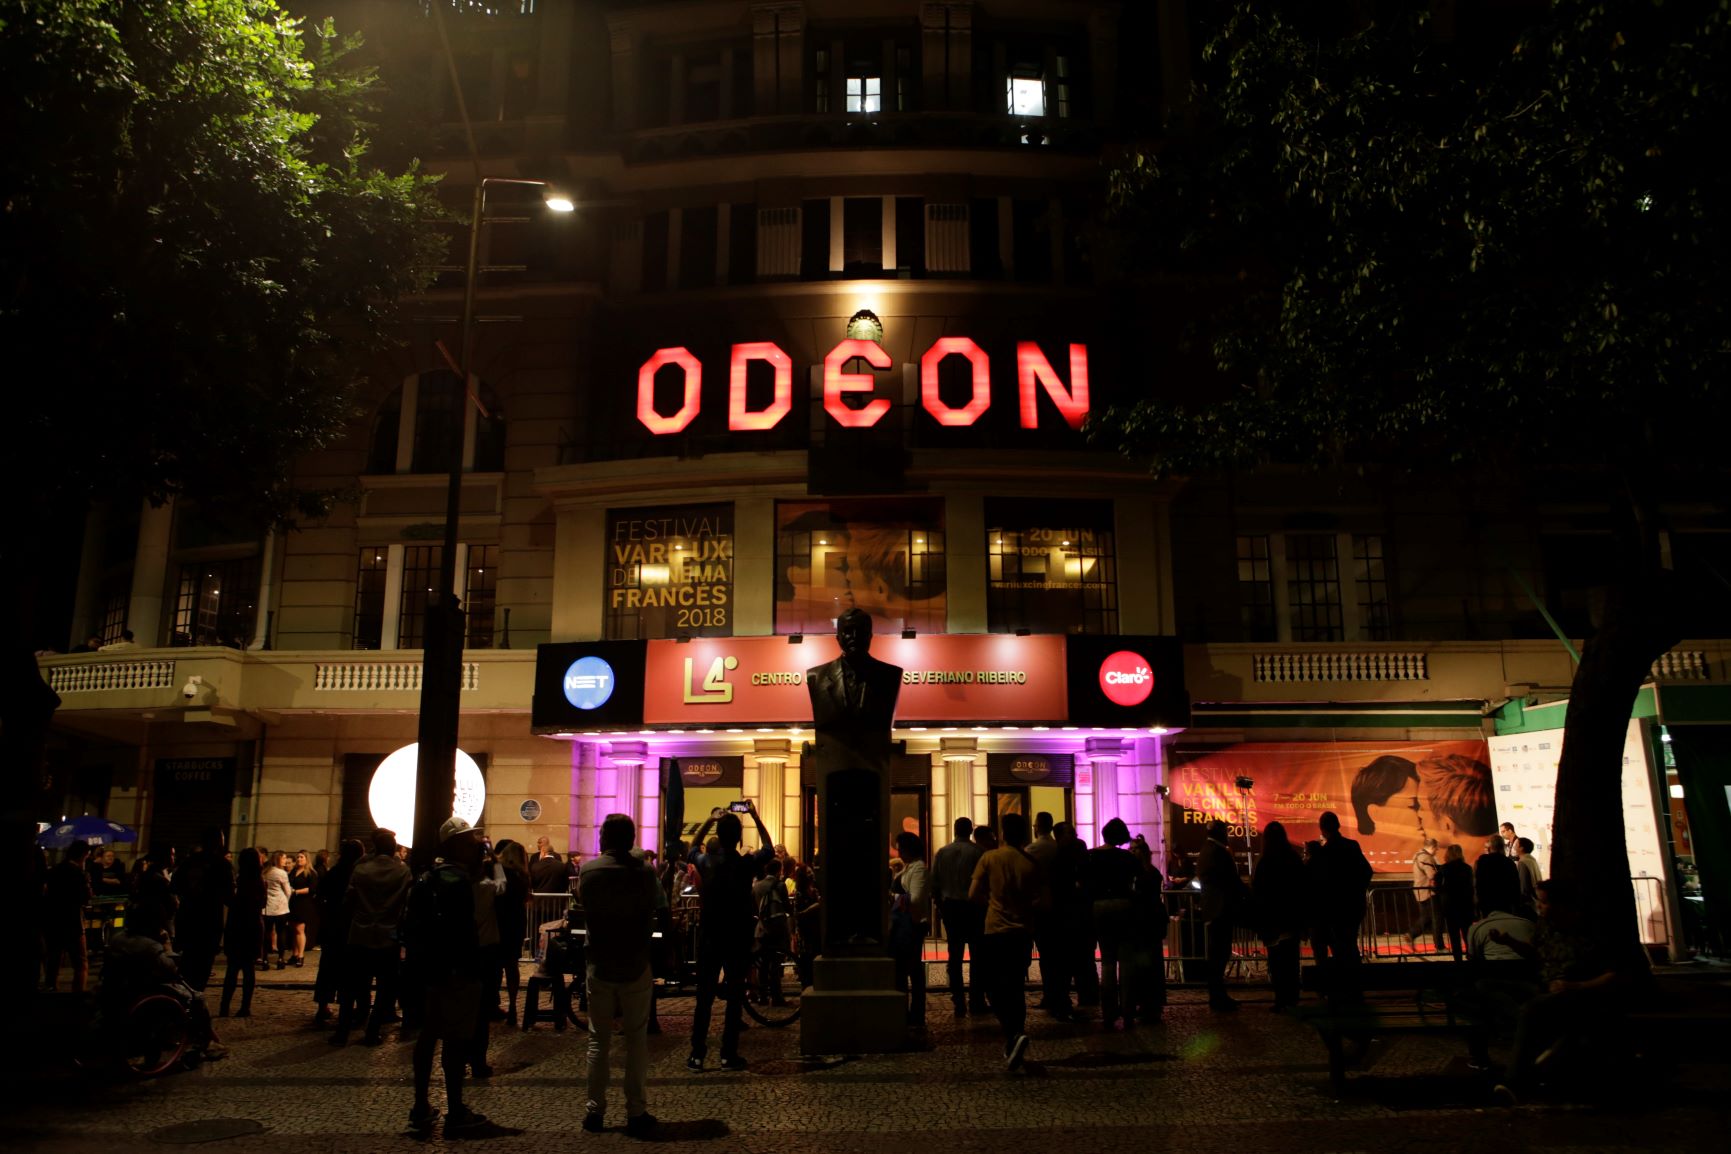 O clássico Odeon, inaugurado em 1926: sobrevivente solitário na Cinelândia (Foto: Divulgação/Festival Varilux)